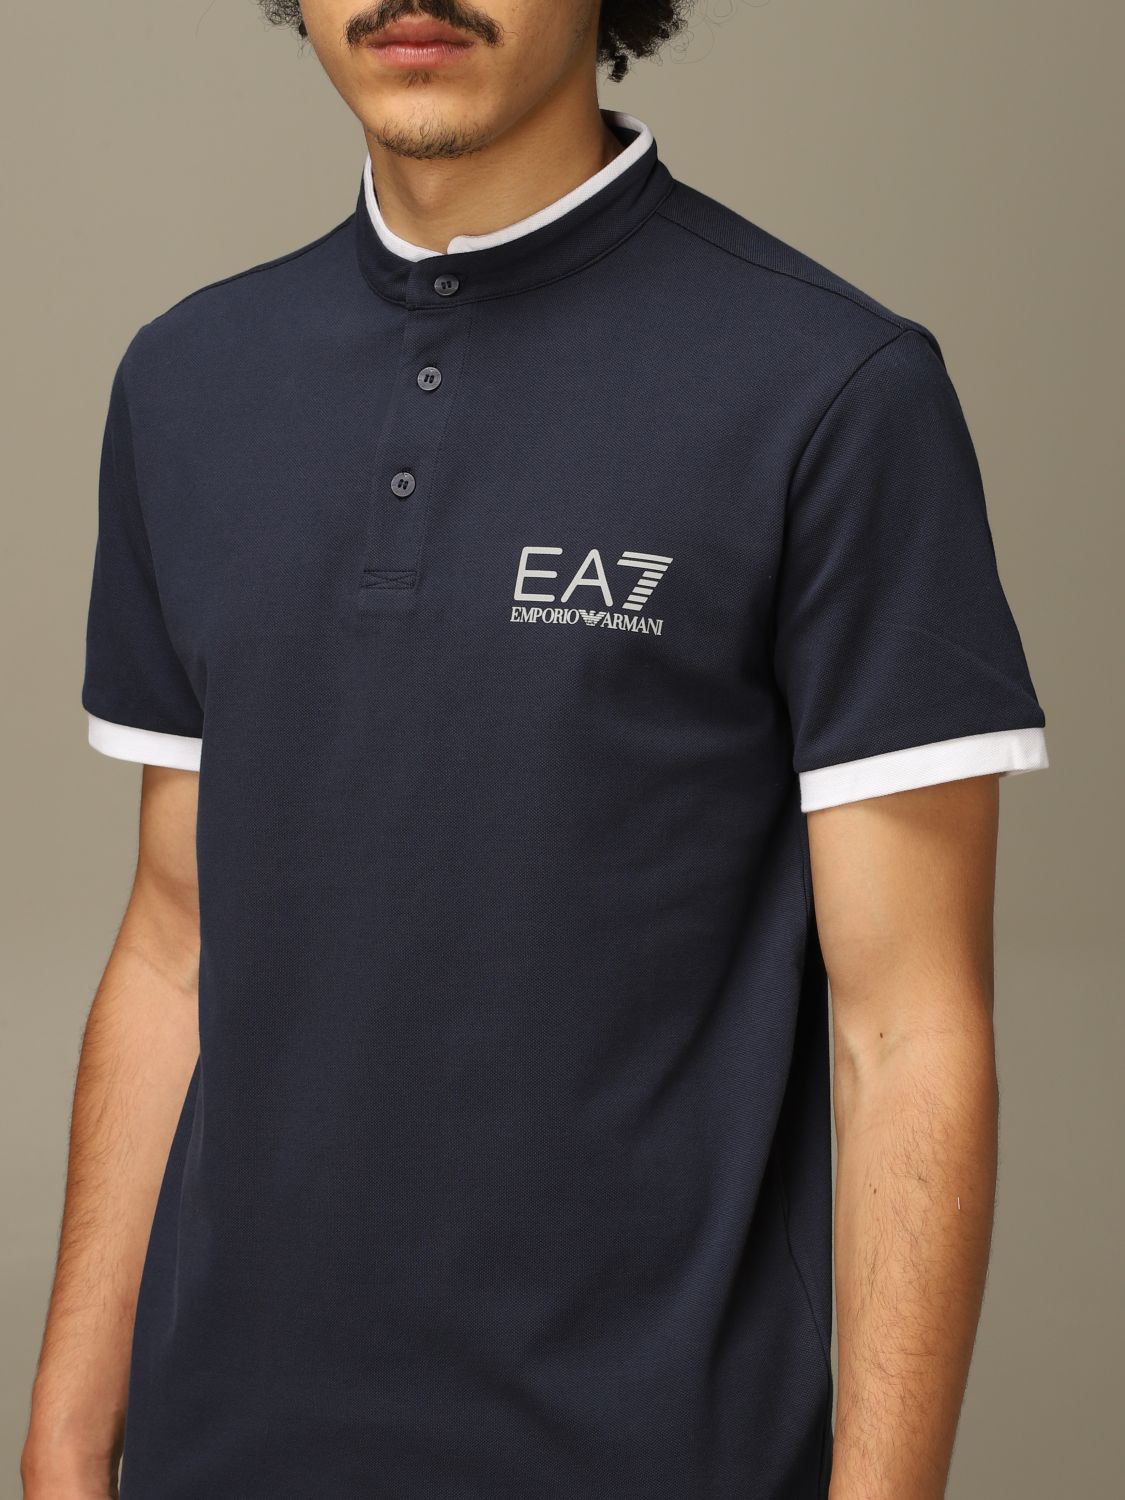 ea7 navy t shirt